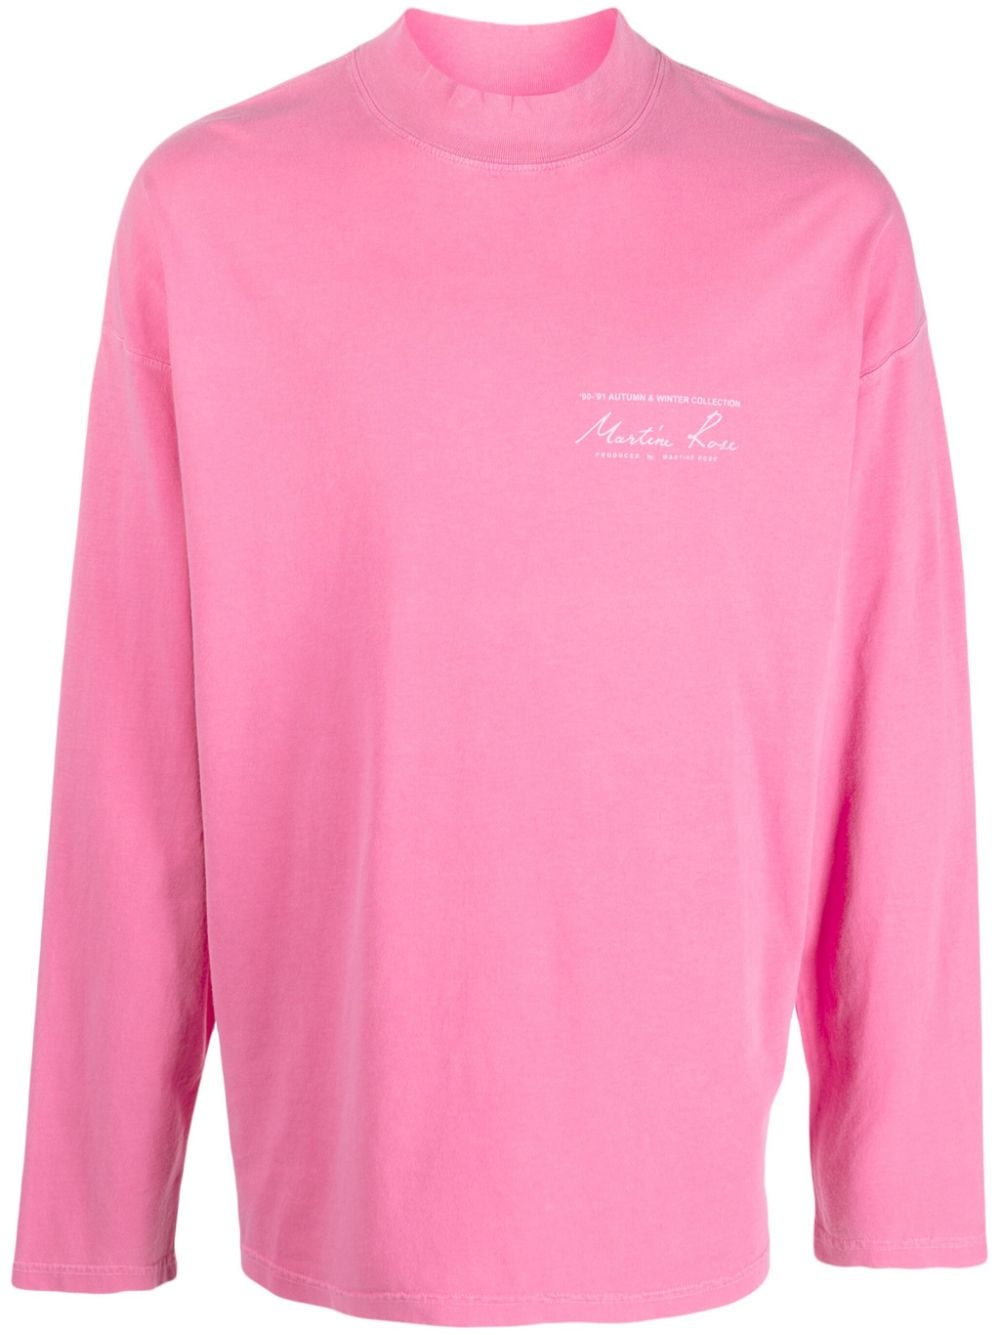 martine rose t-shirt longues manches à logo imprimé